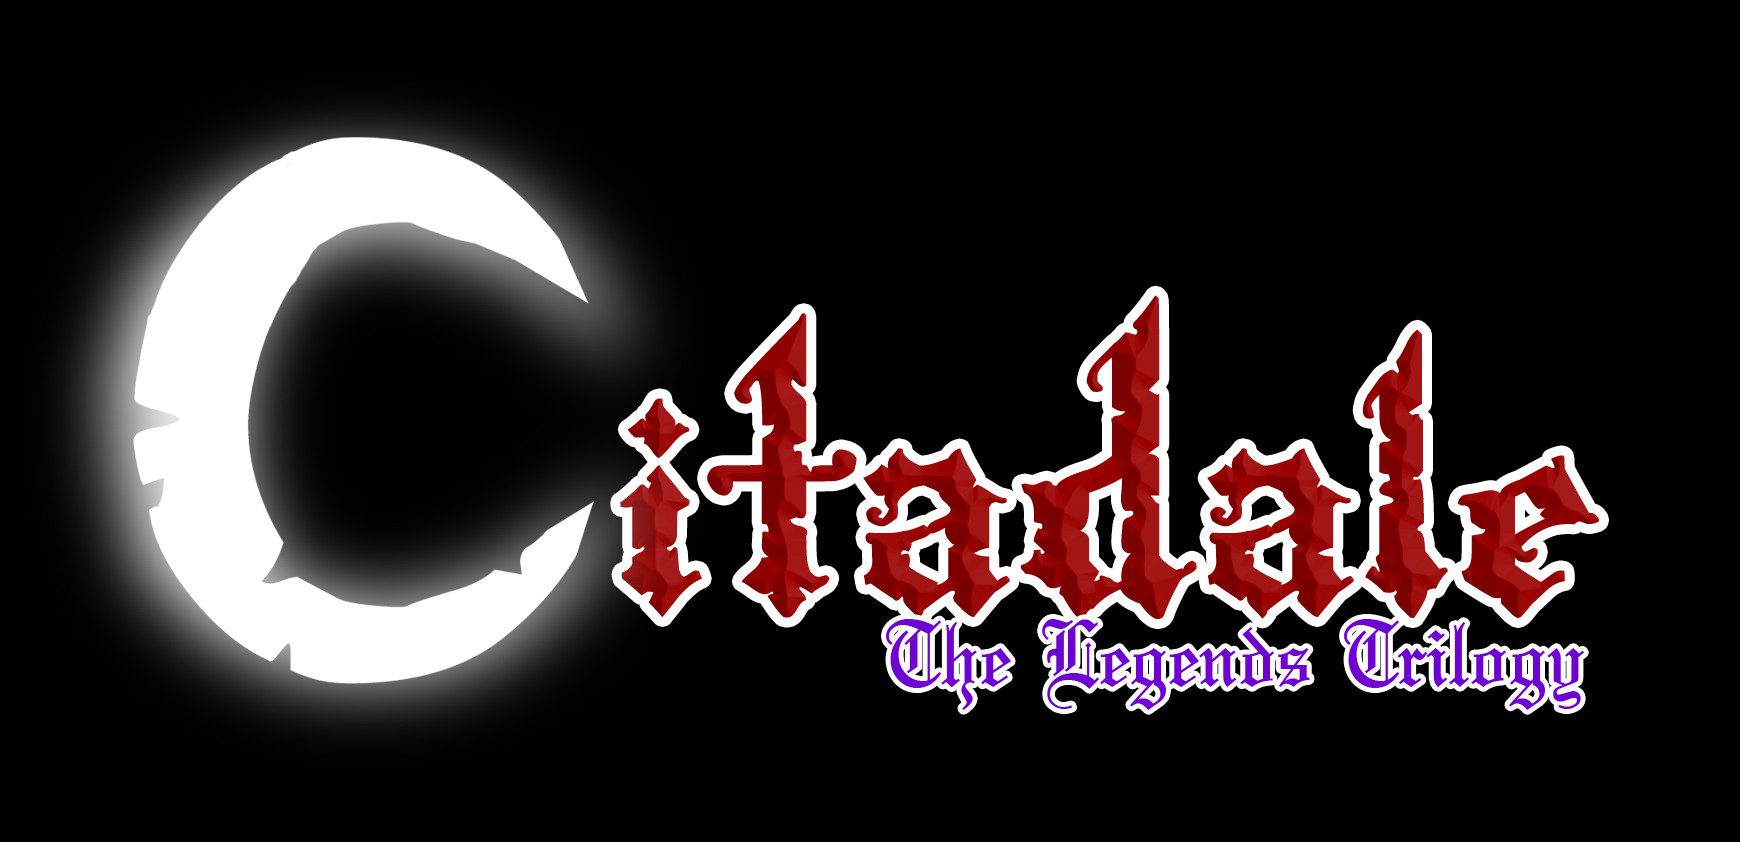 Citadale: The Legends Trilogy – Review